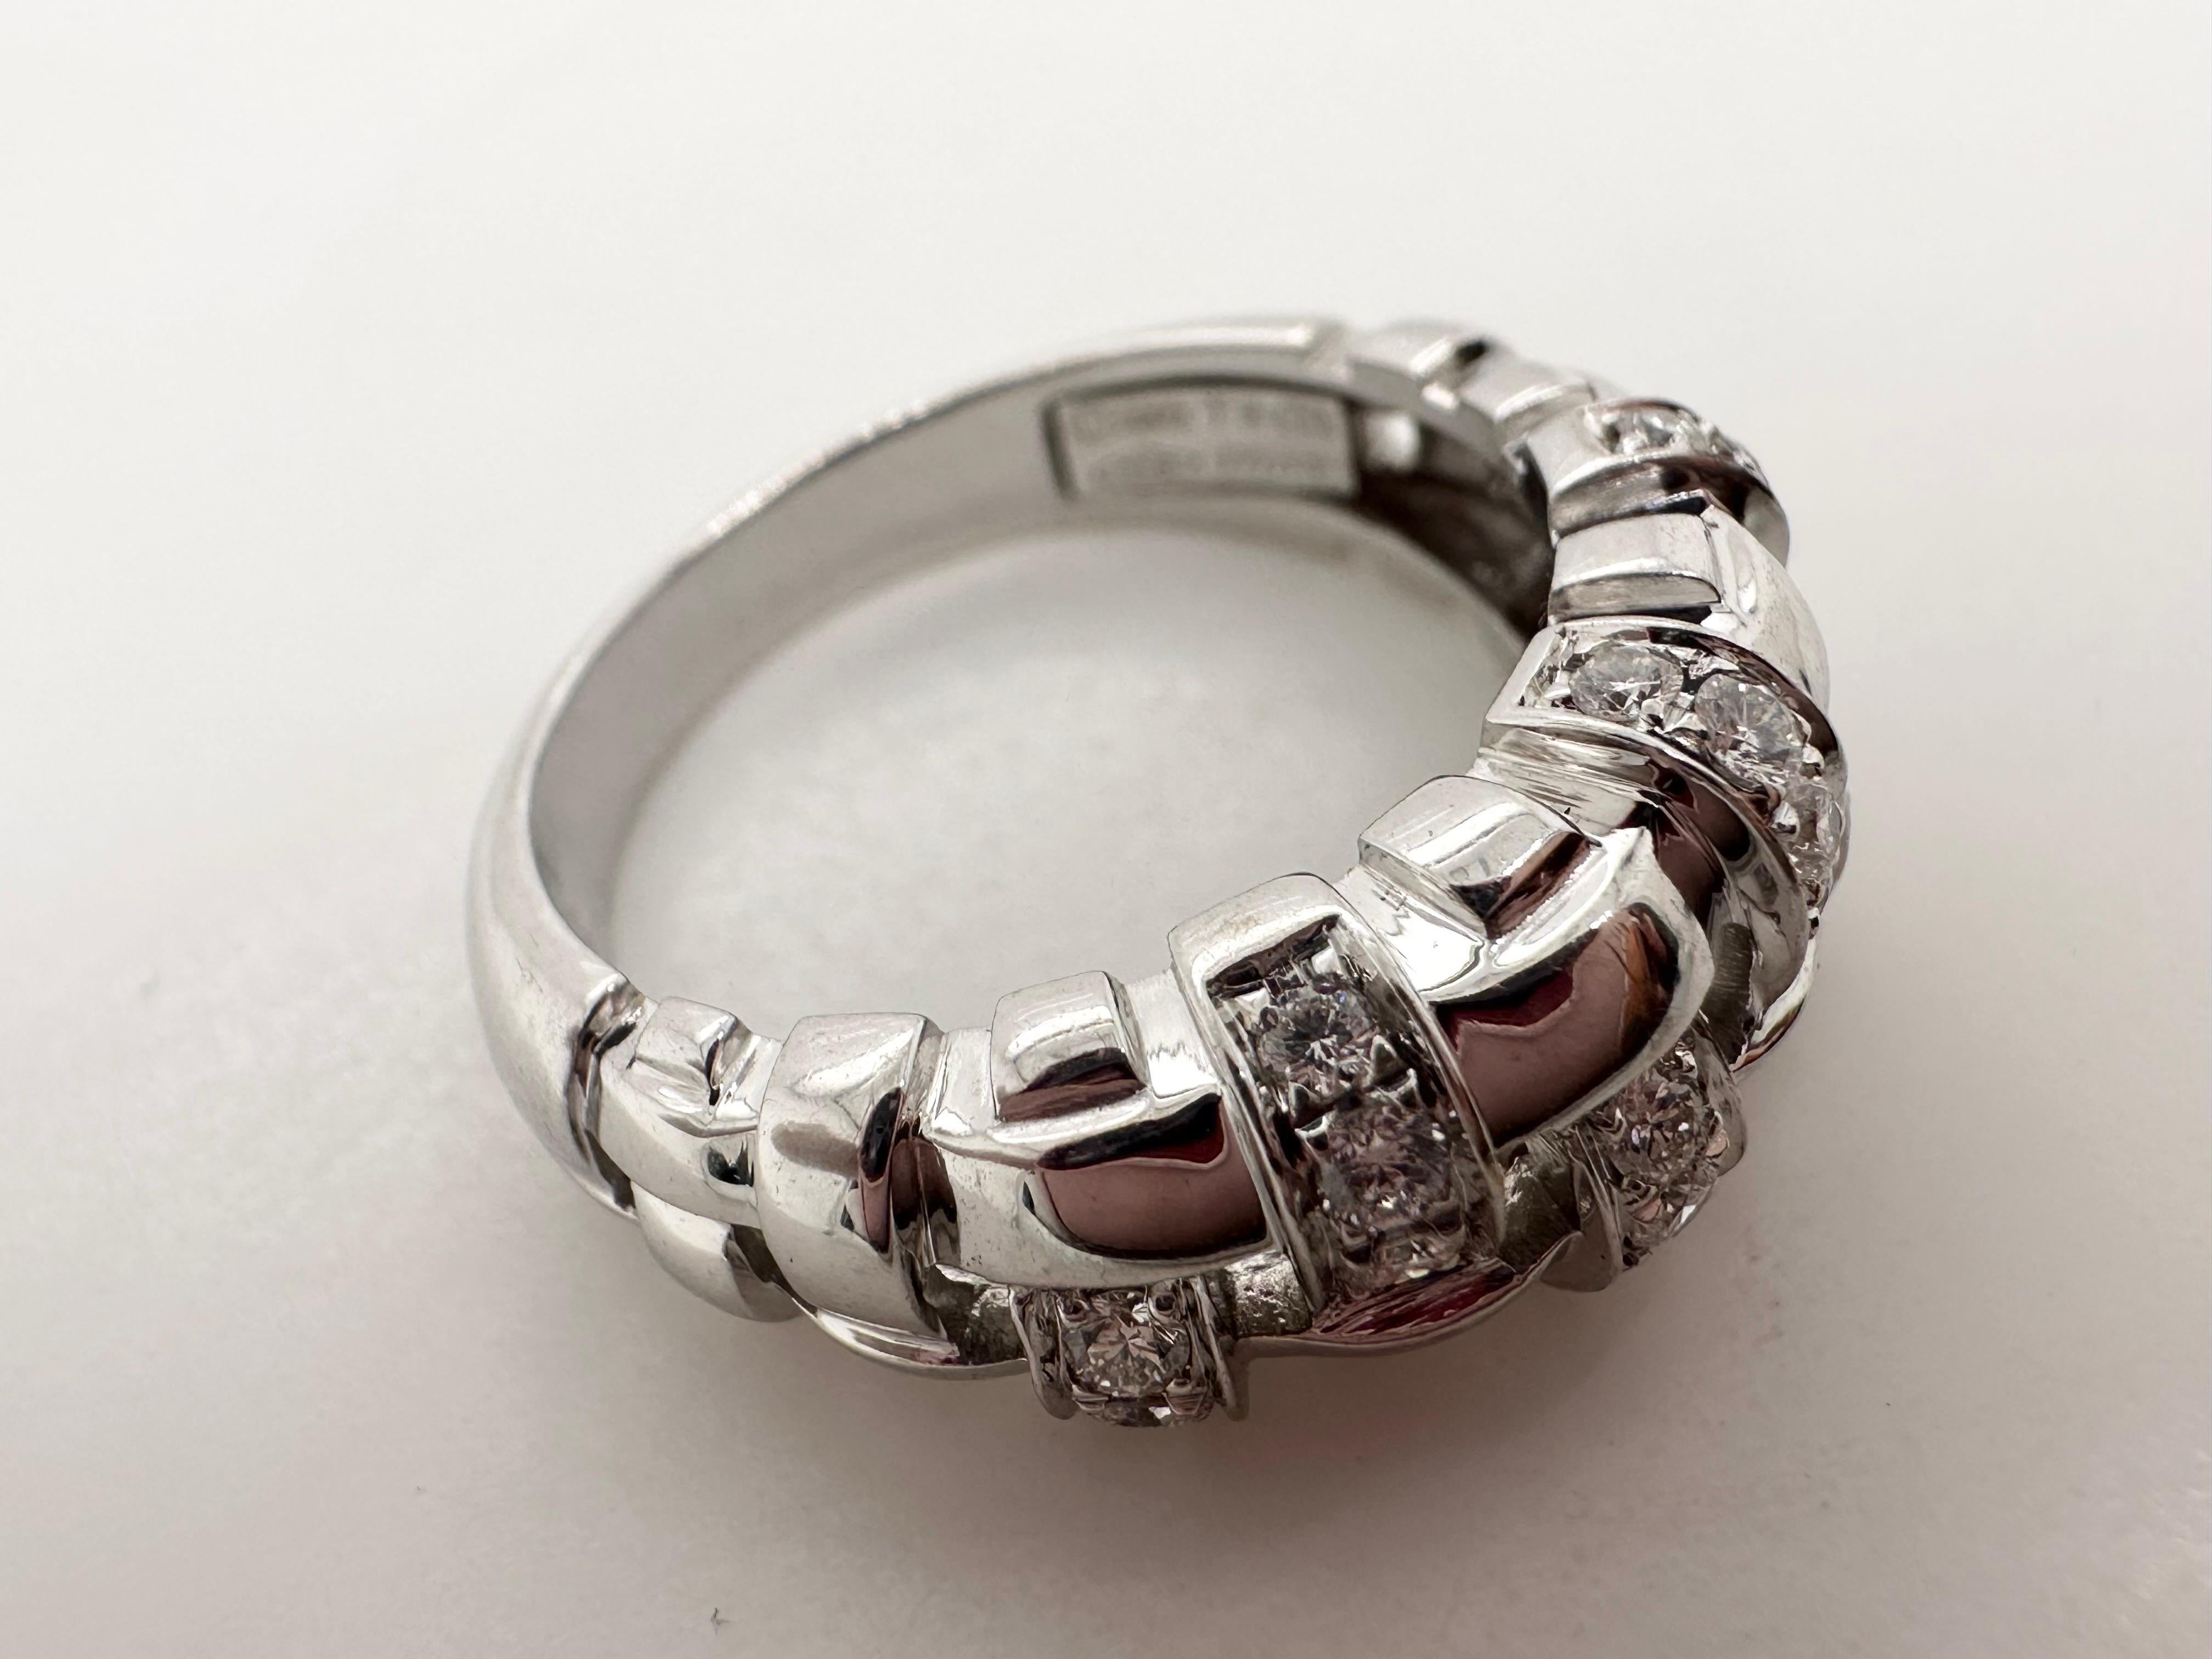 Bague en diamant de Tiffany and Co. de la Collection Vannerie réalisée en 2002. Magnifique bague en or blanc 18KT avec des diamants VVS, sertie à la main et d'excellente facture. Cette bague est en parfait état, on dirait qu'elle n'a jamais été